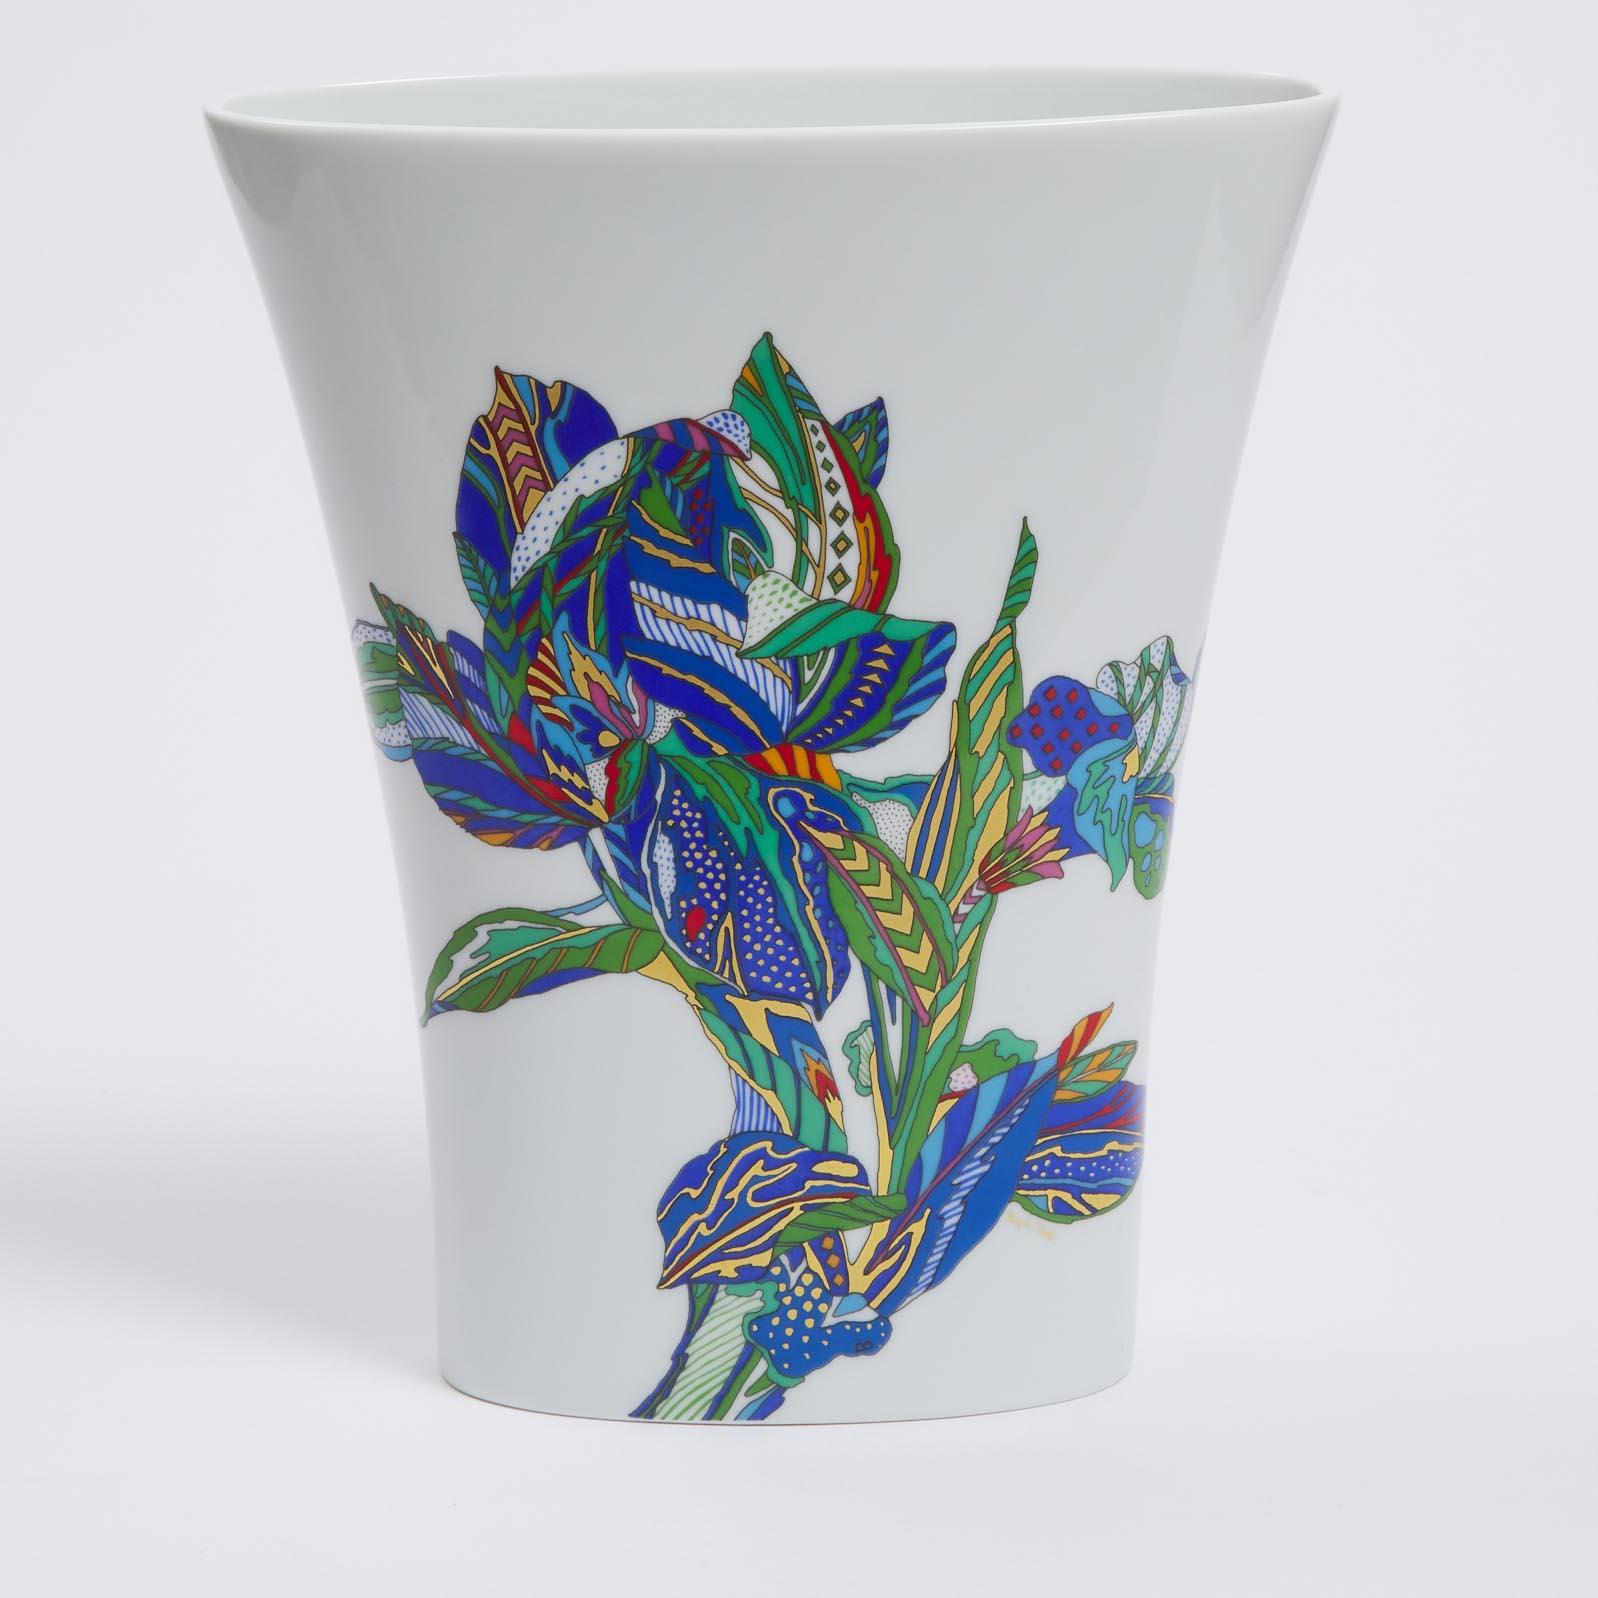 Rosenthal Vase, Elsa Fischer Treyden, late 20th century